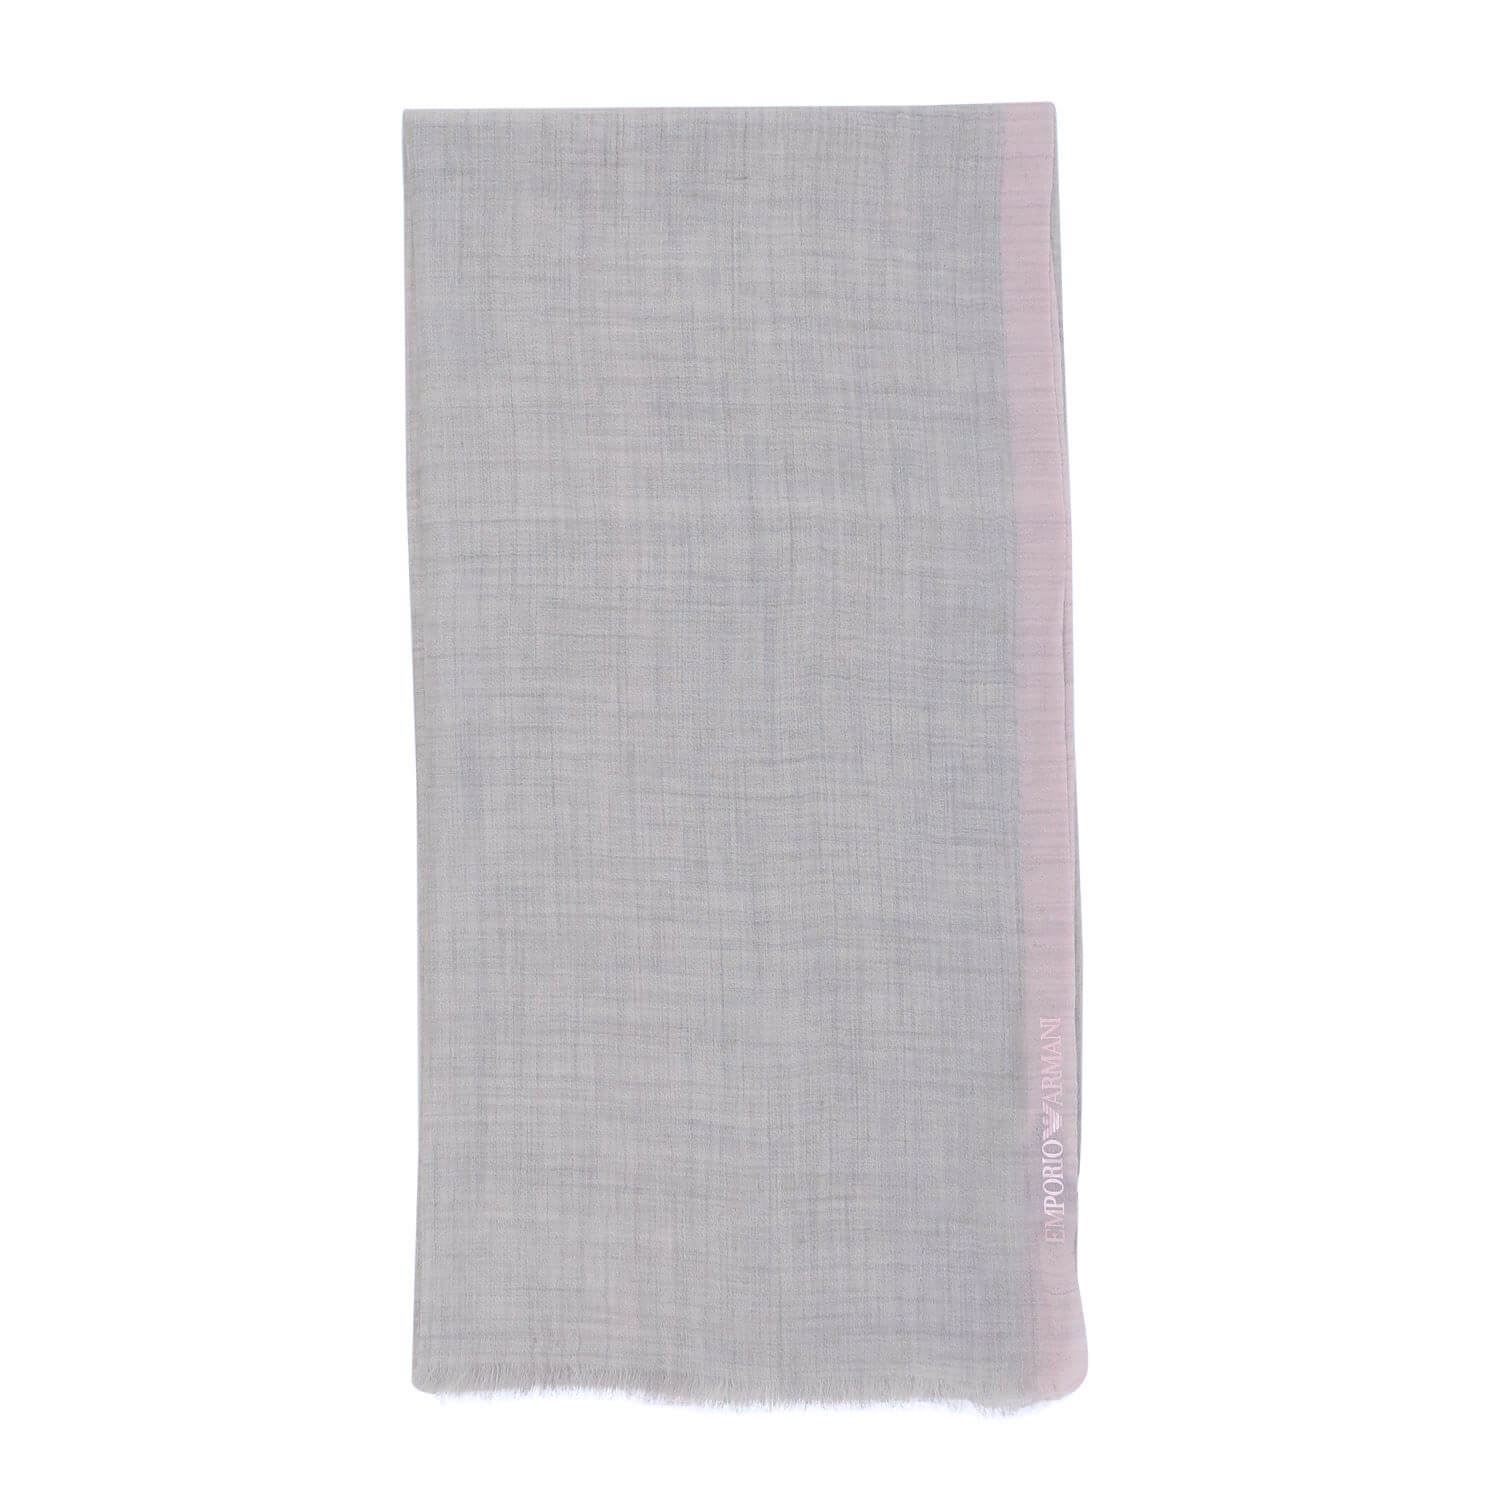 Кашемировый шарф Armani 70х200 см, цвет Серый, фото 1